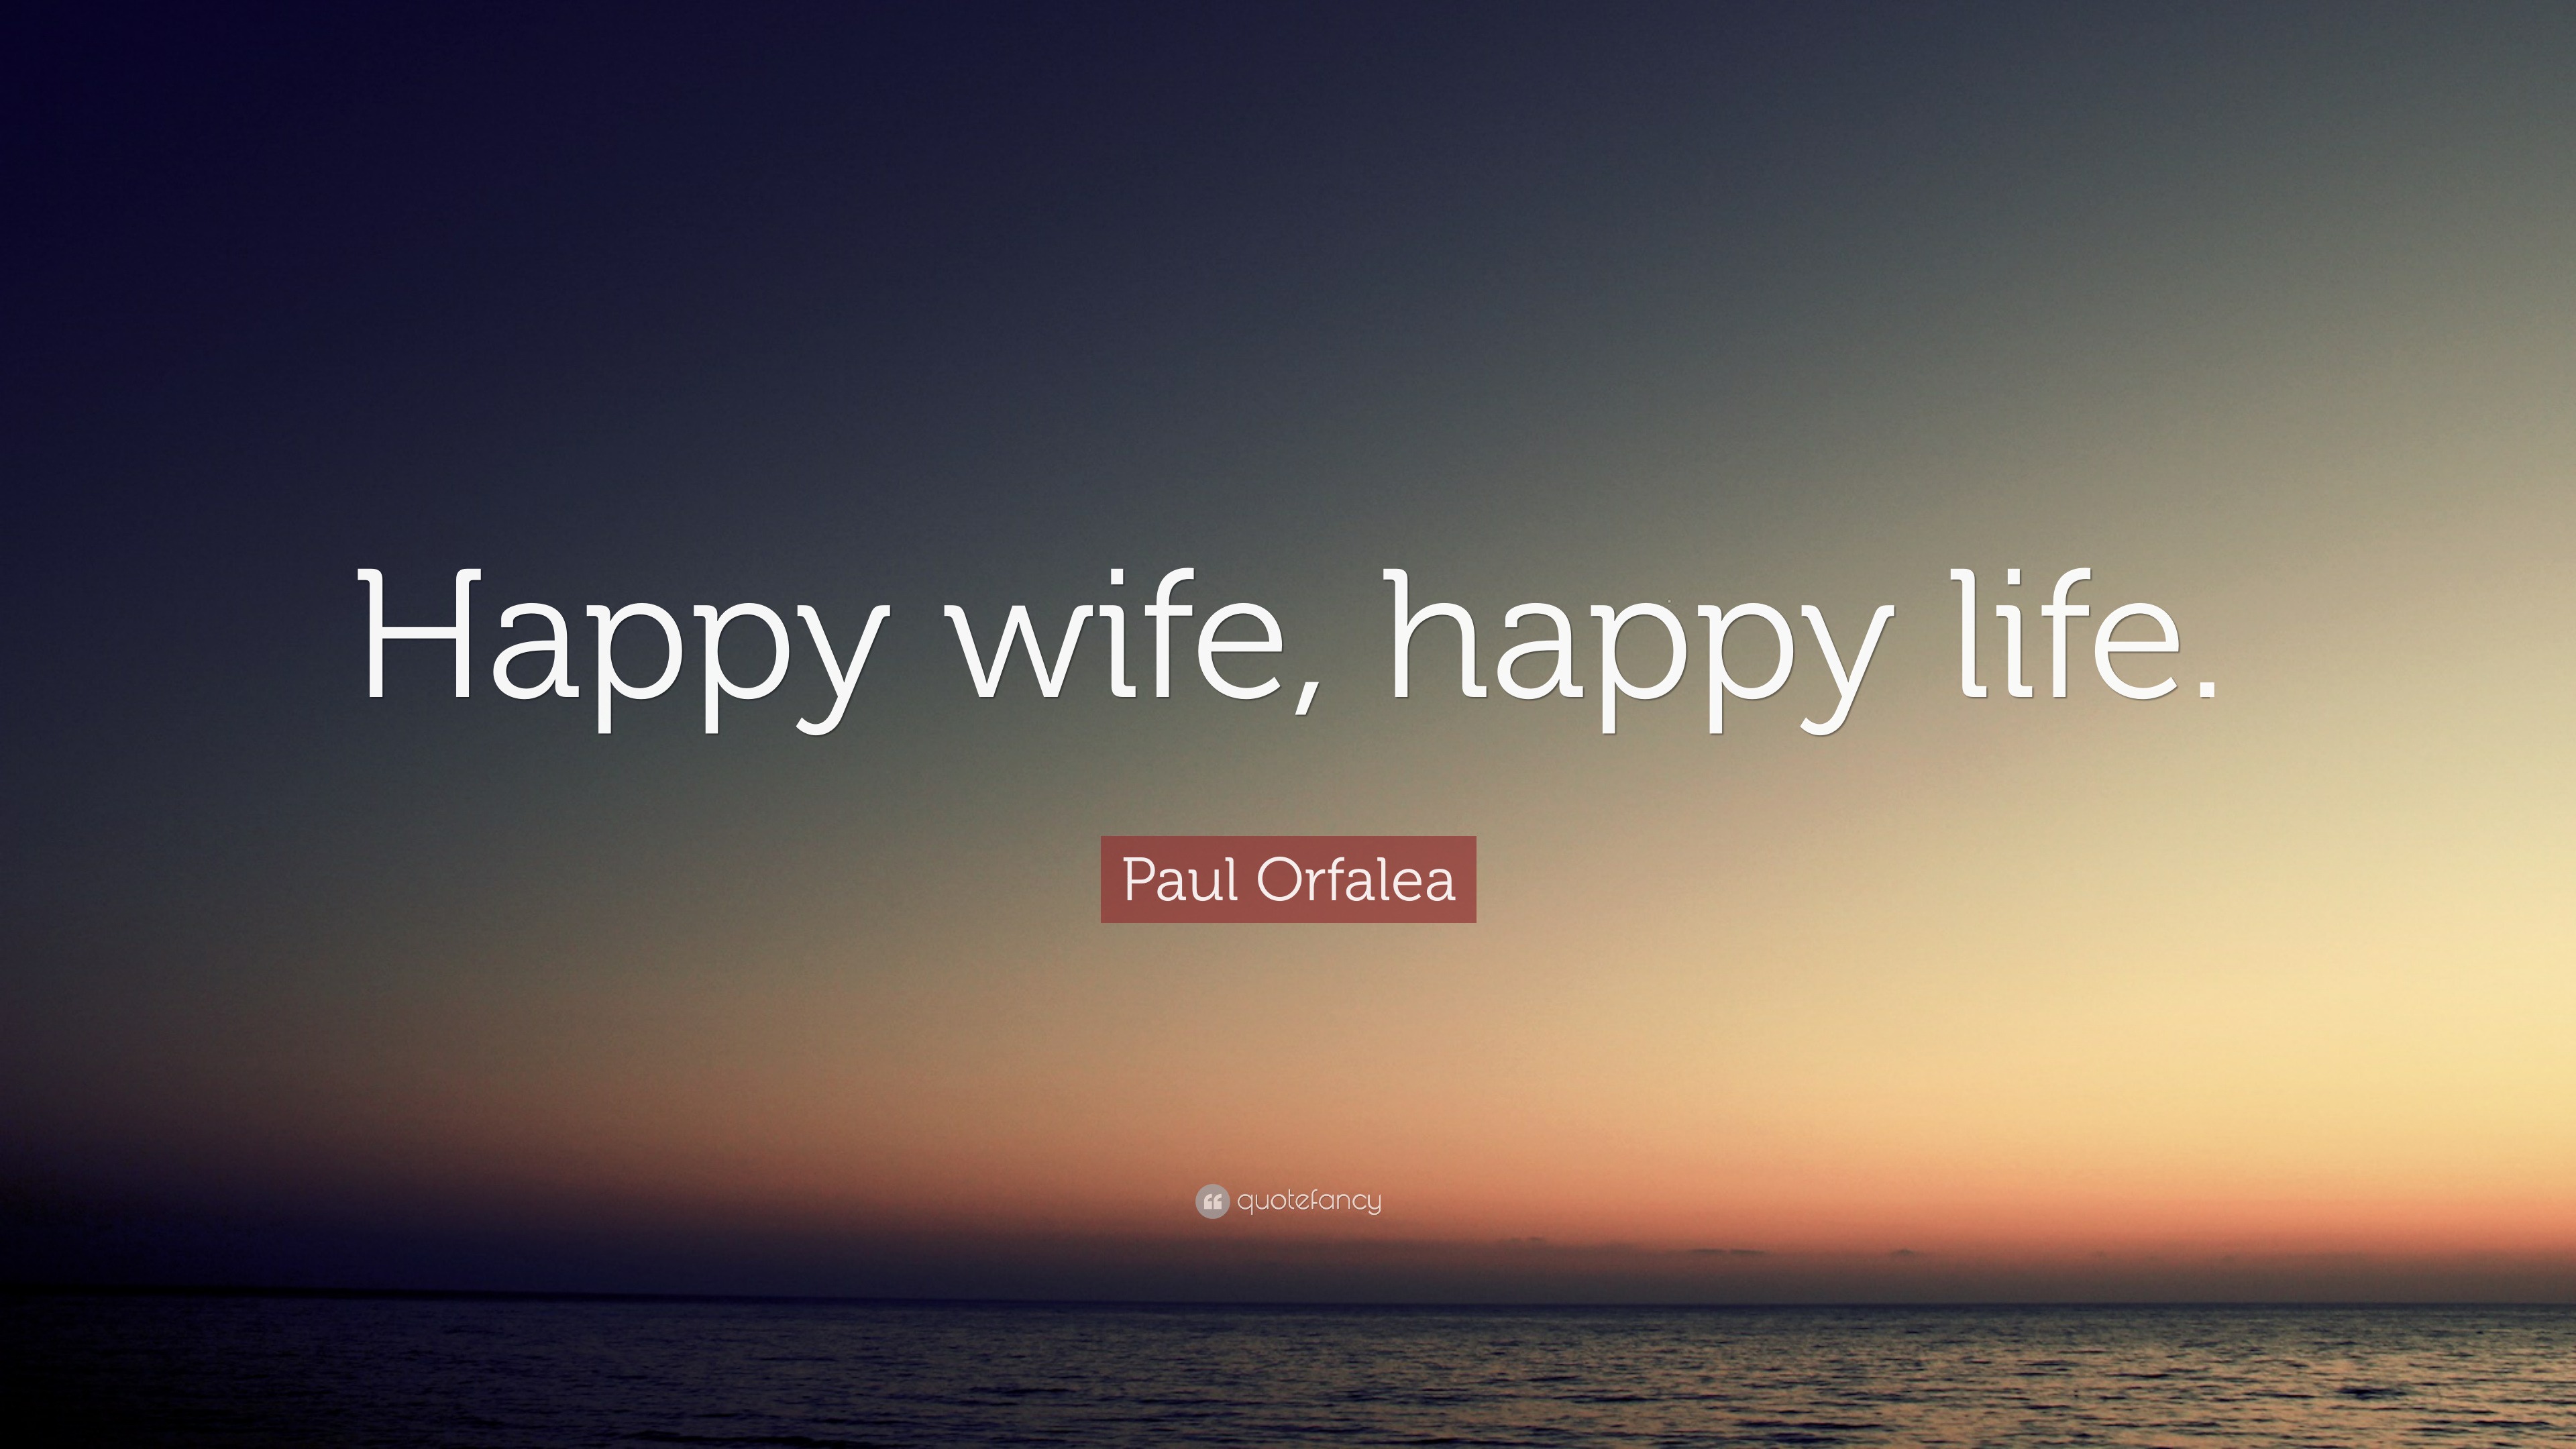 https://quotefancy.com/media/wallpaper/3840x2160/2096793-Paul-Orfalea-Quote-Happy-wife-happy-life.jpg